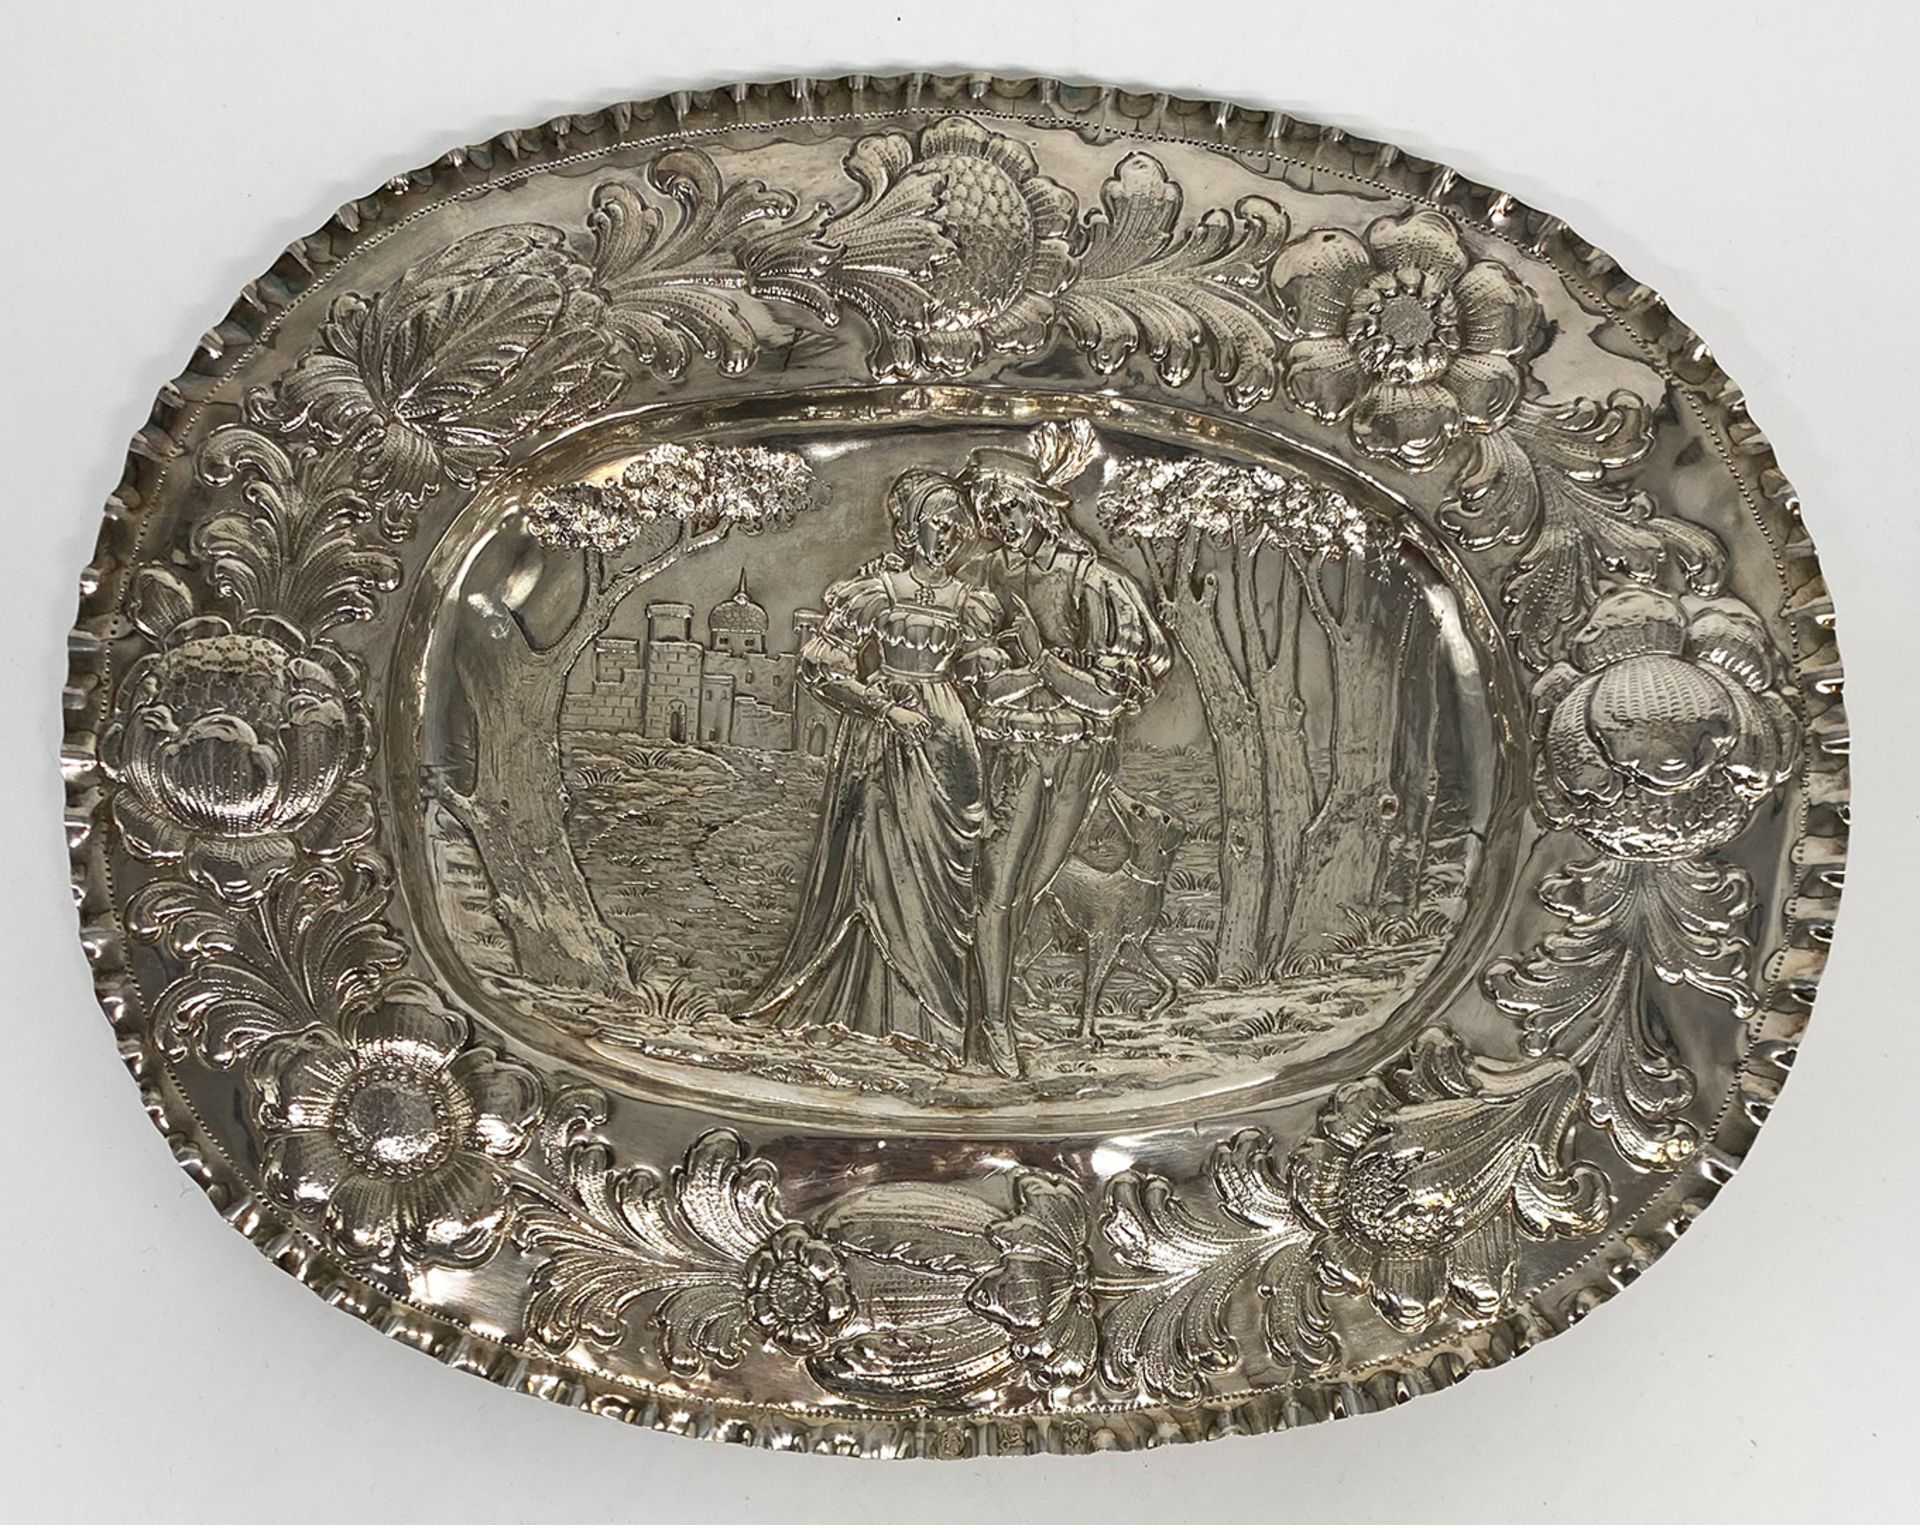 Ovale Silberschale mit üppigem Blumendekor-Relief auf der Fahne sowie einer Figurendarstellung im